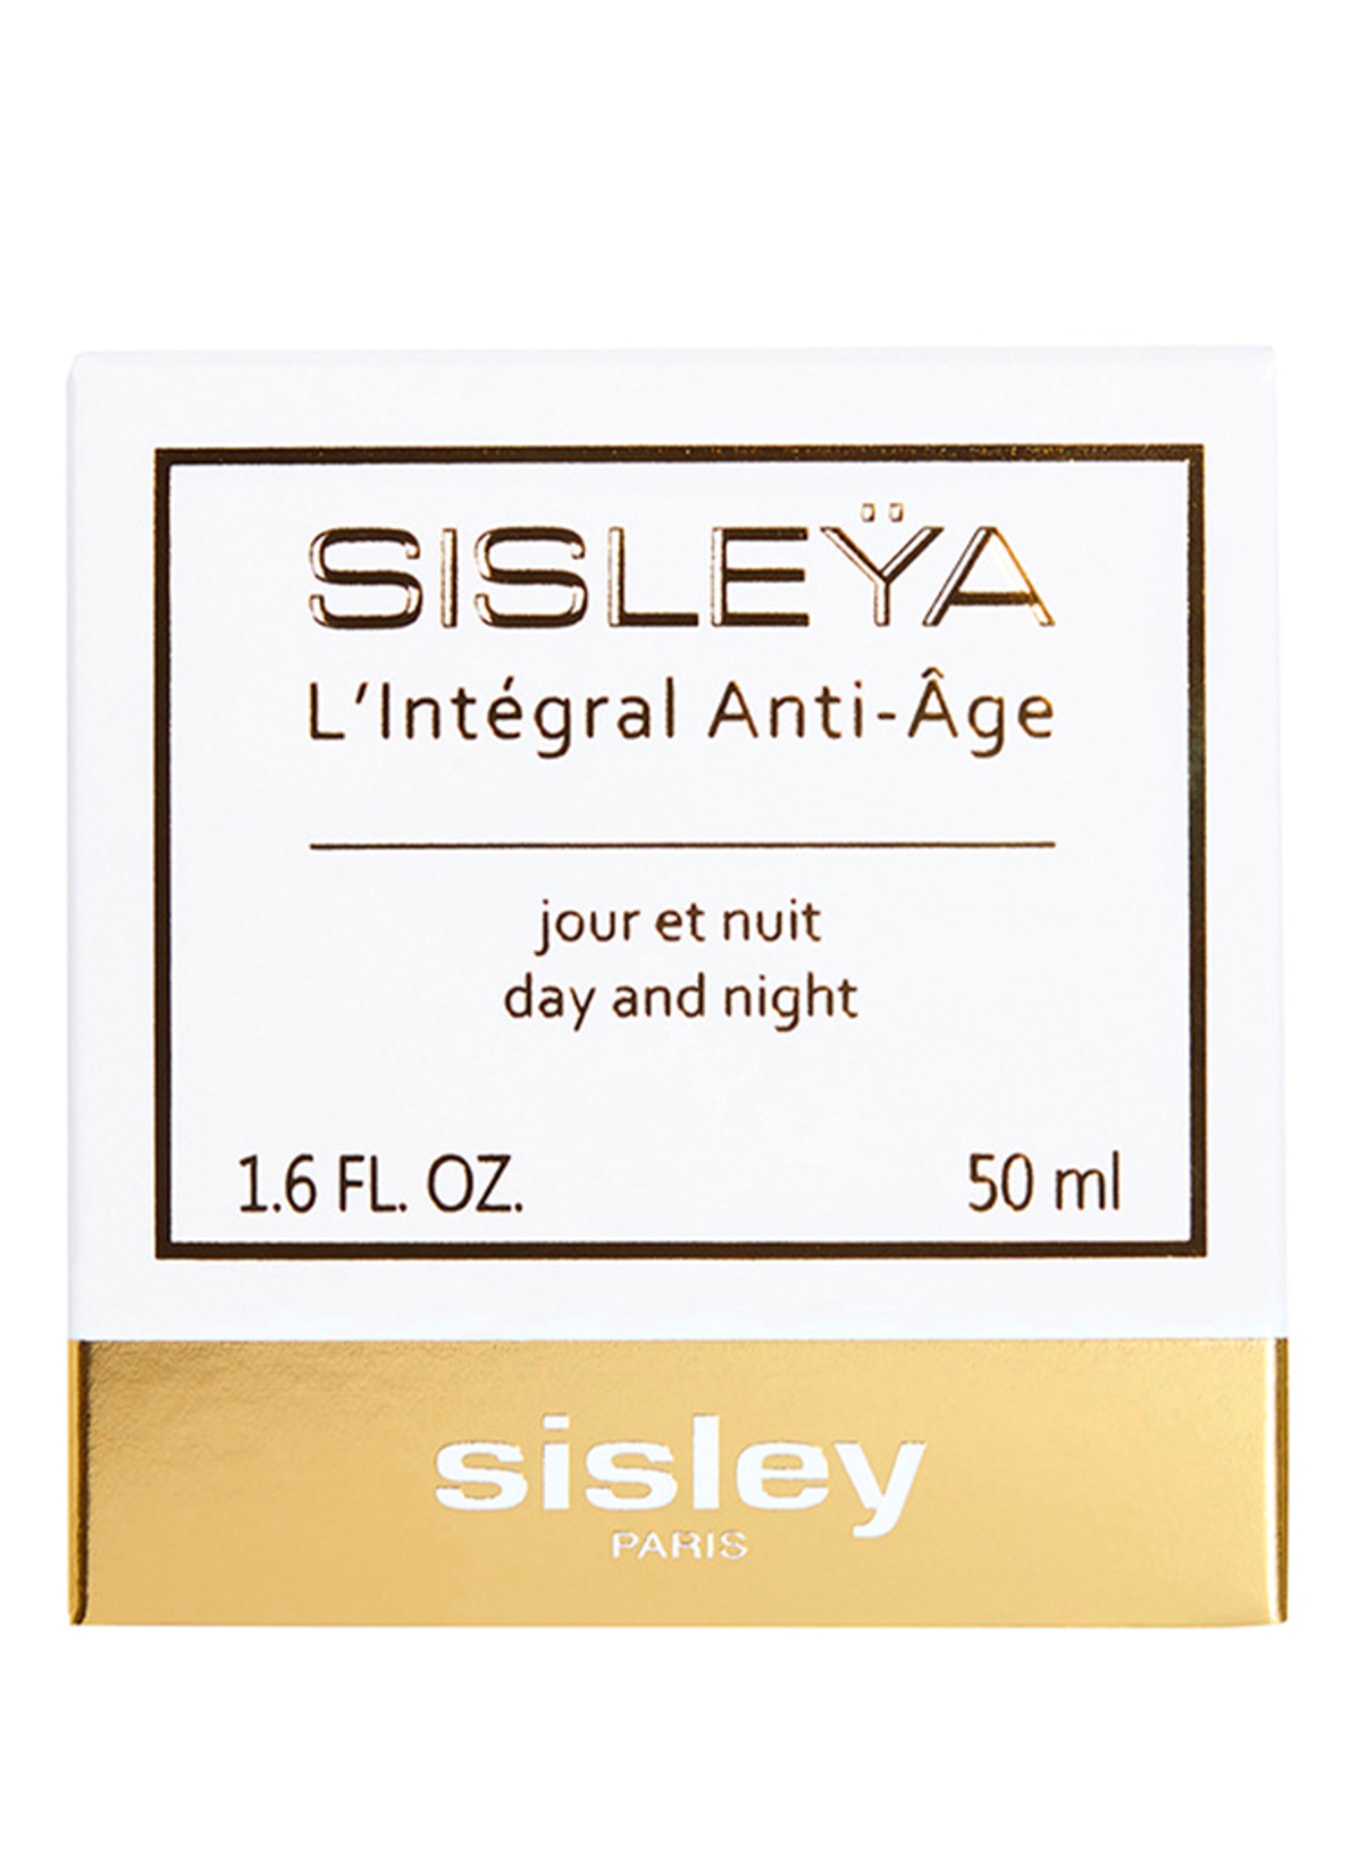 sisley Paris SISLEŸA L'INTÉGRAL ANTI-AGE (Bild 2)